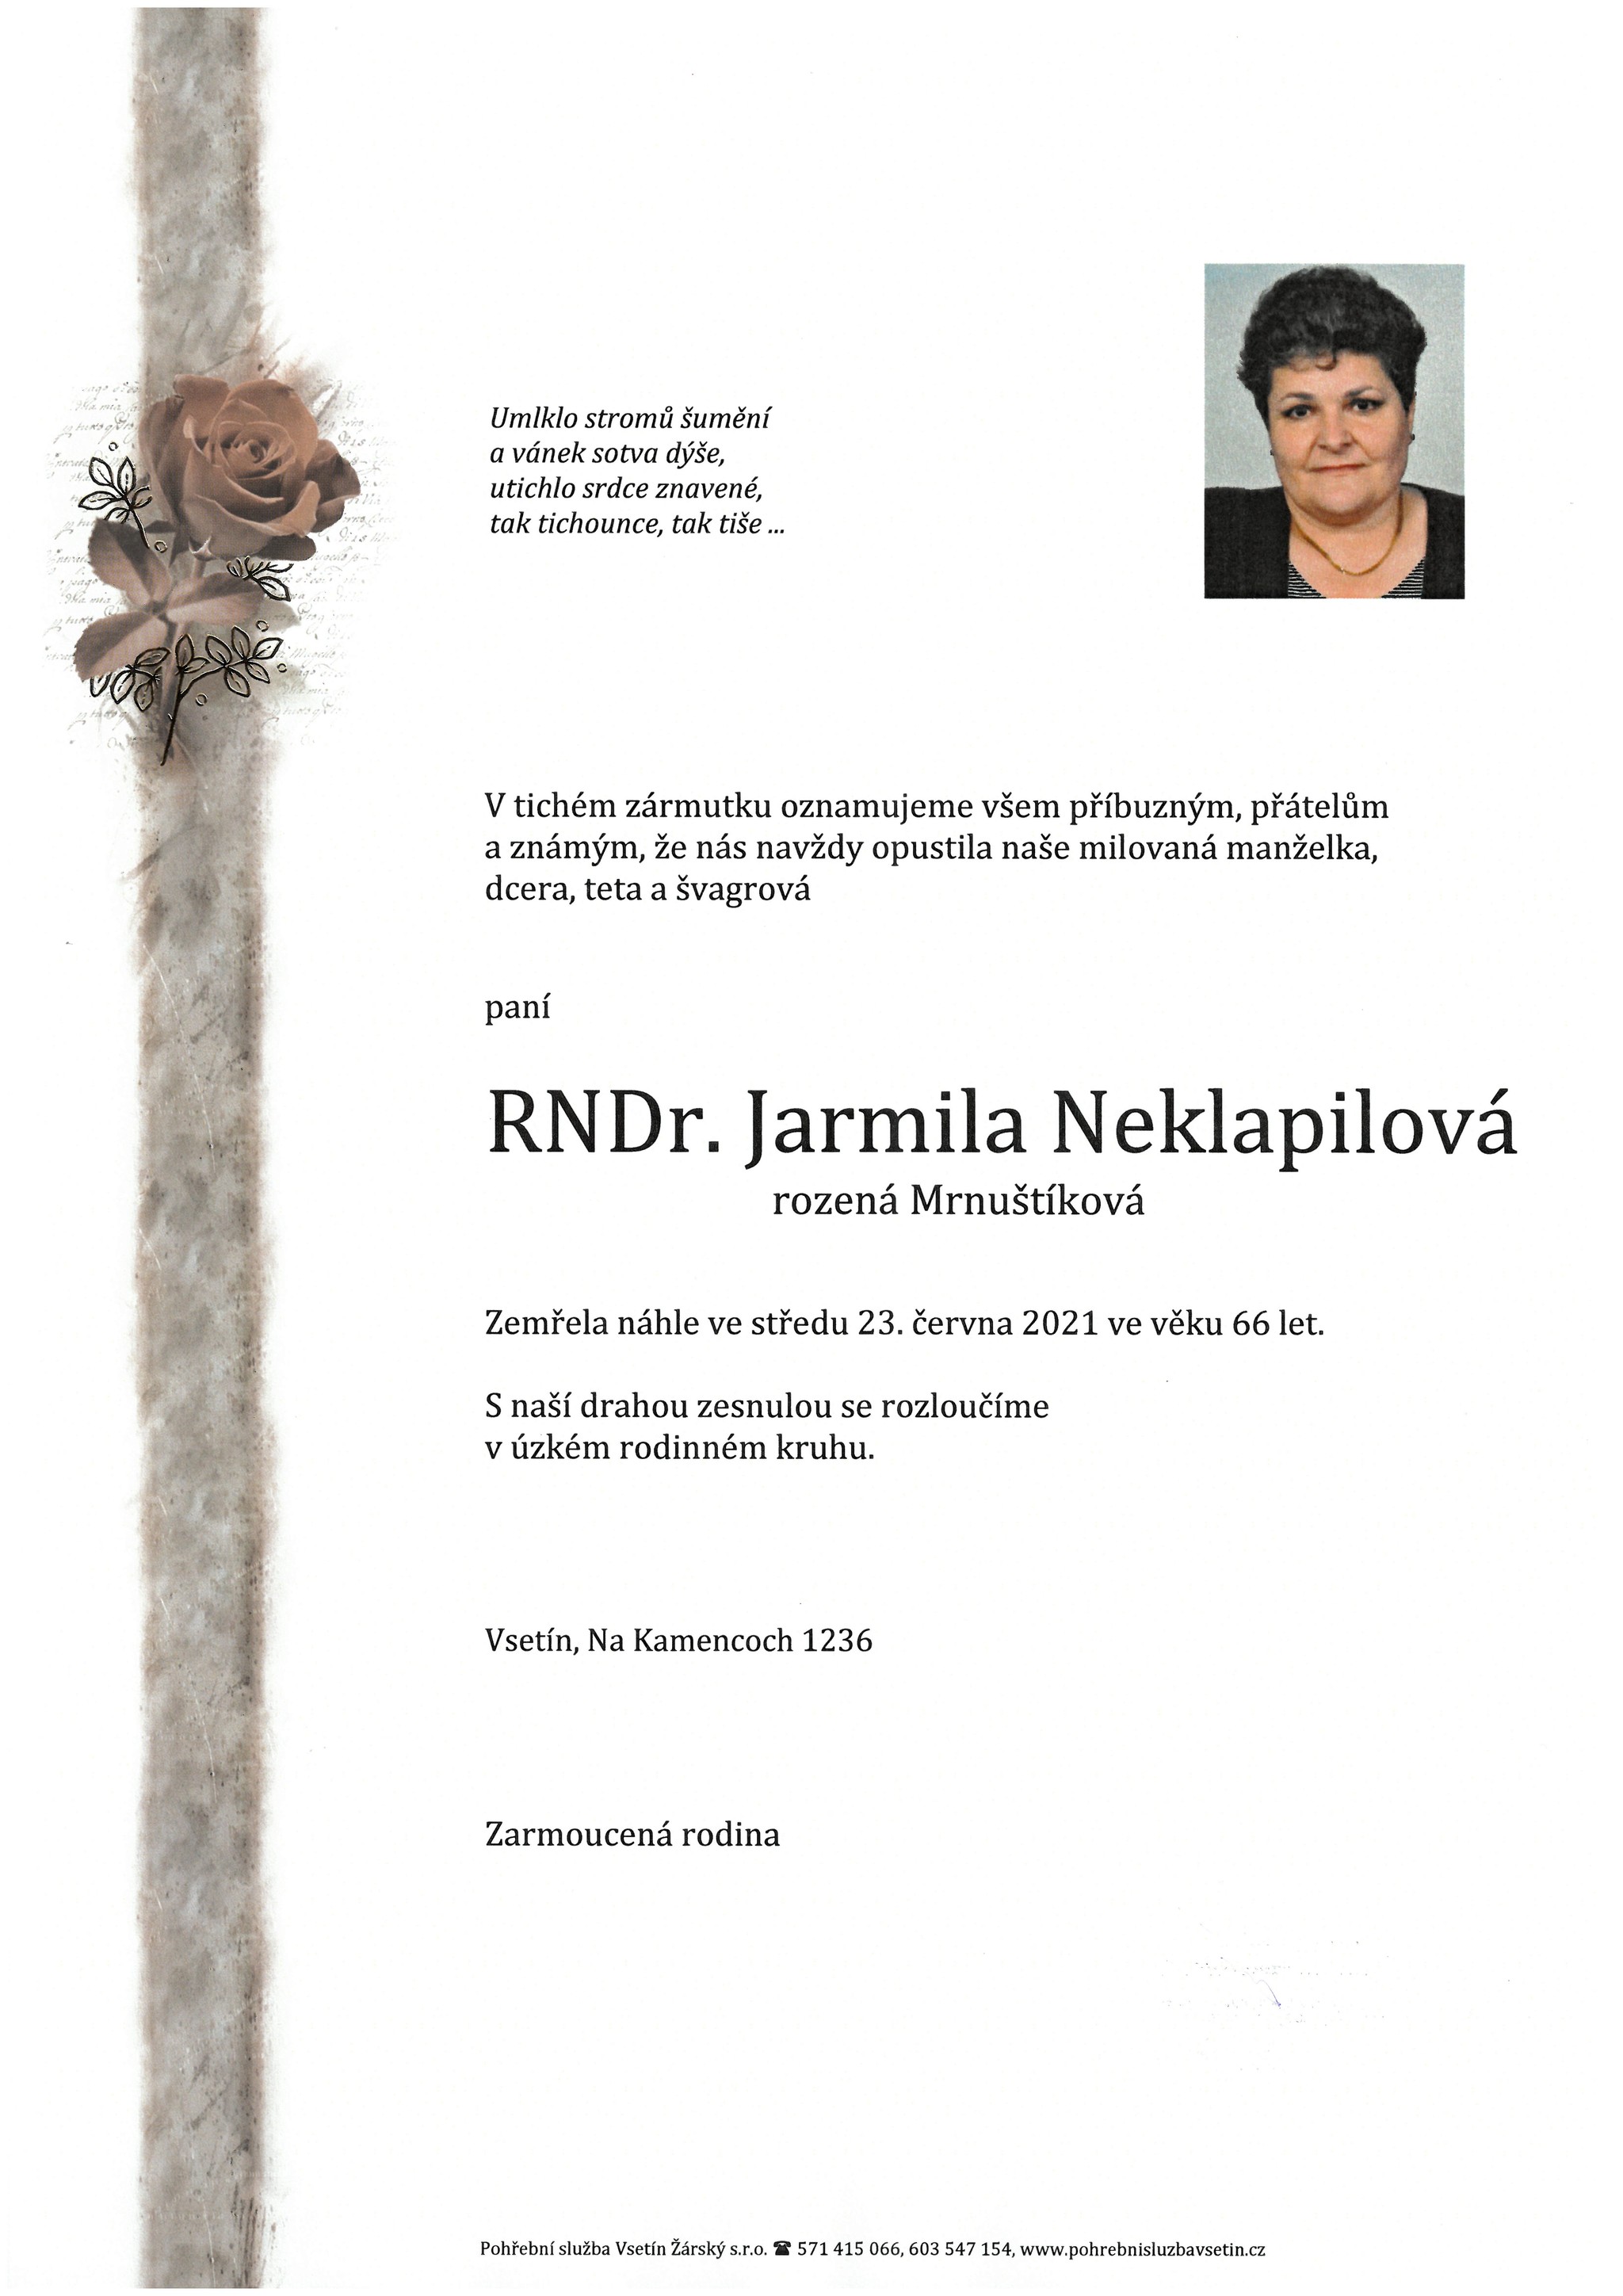 RNDr. Jarmila Neklapilová